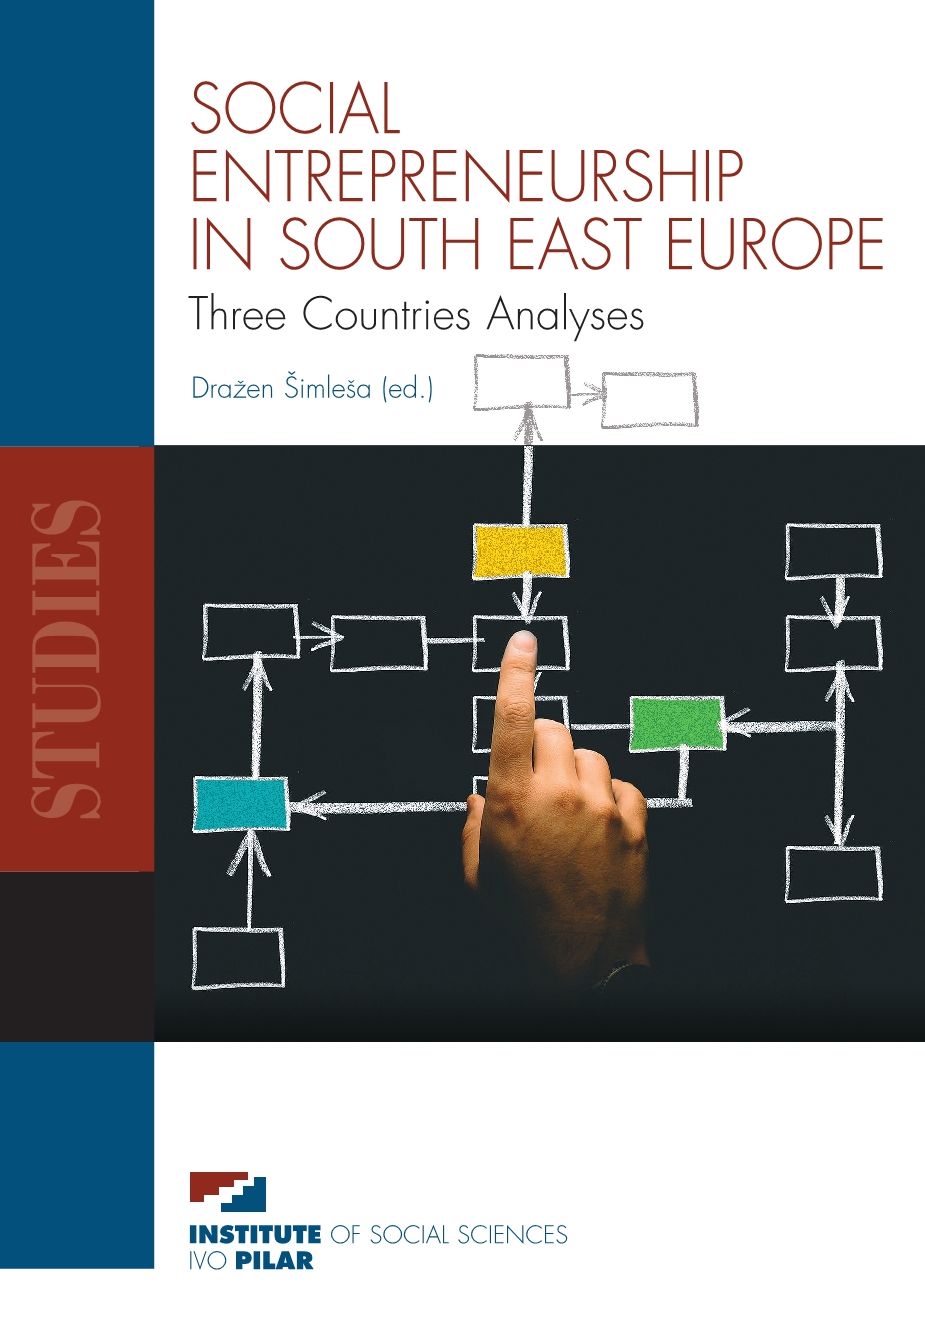 Objavljena Studija SOCIAL ENTREPRENEURSHIP IN SOUTH EAST EUROPE